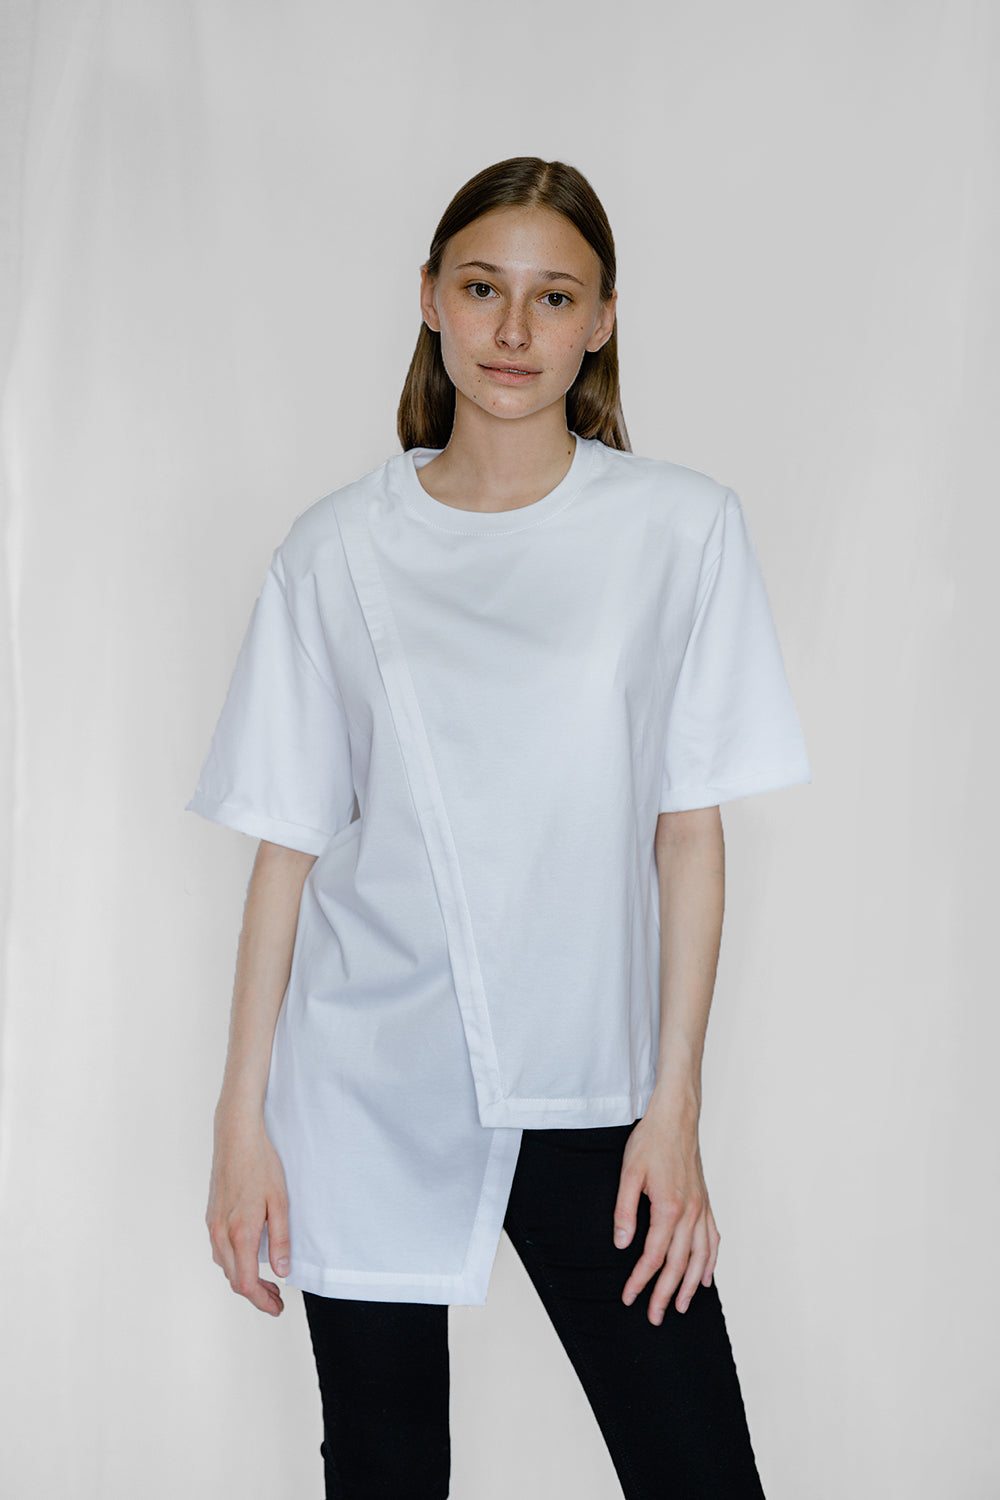 ZGEST-white-t-shirt padded